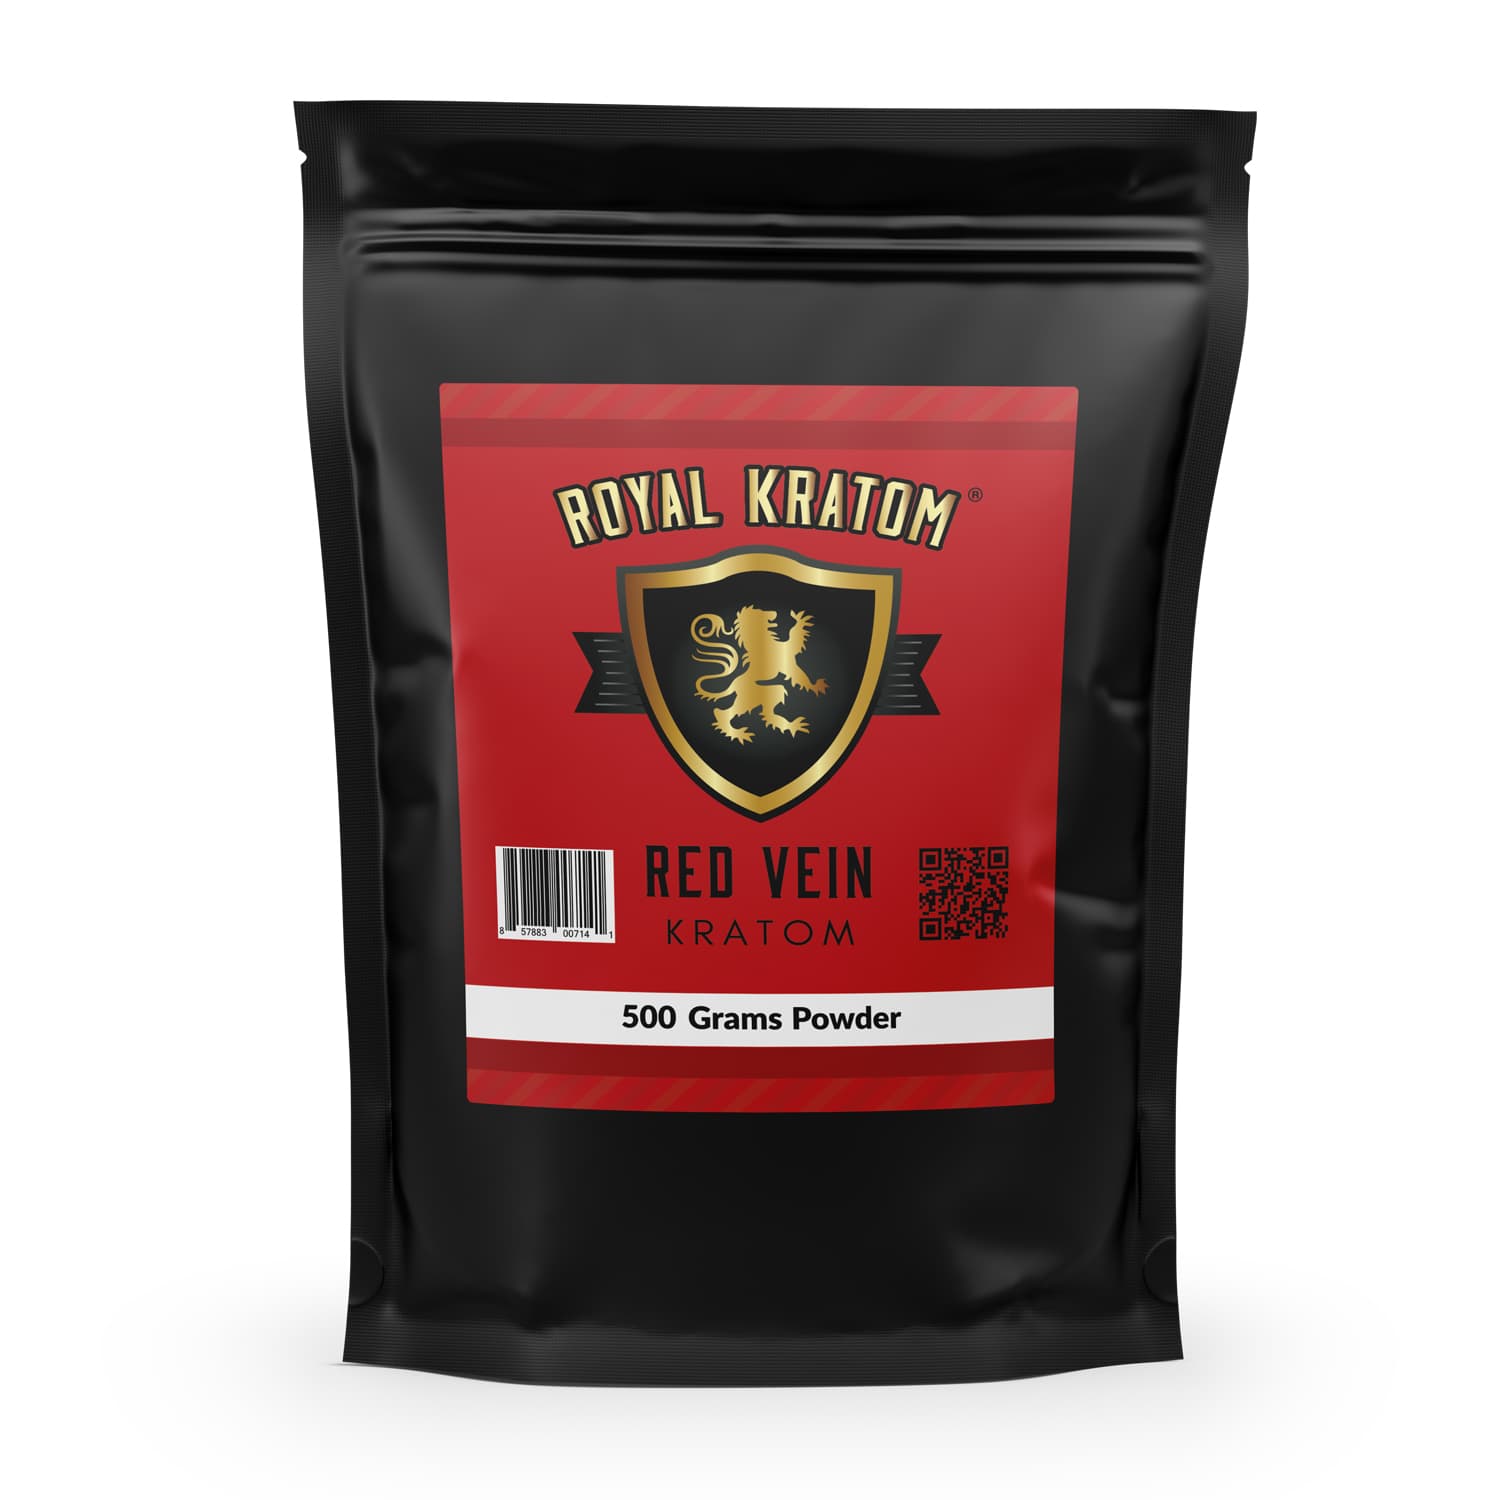 Royal Kratom Red Vein Kratom Powder 500 Grams front of package